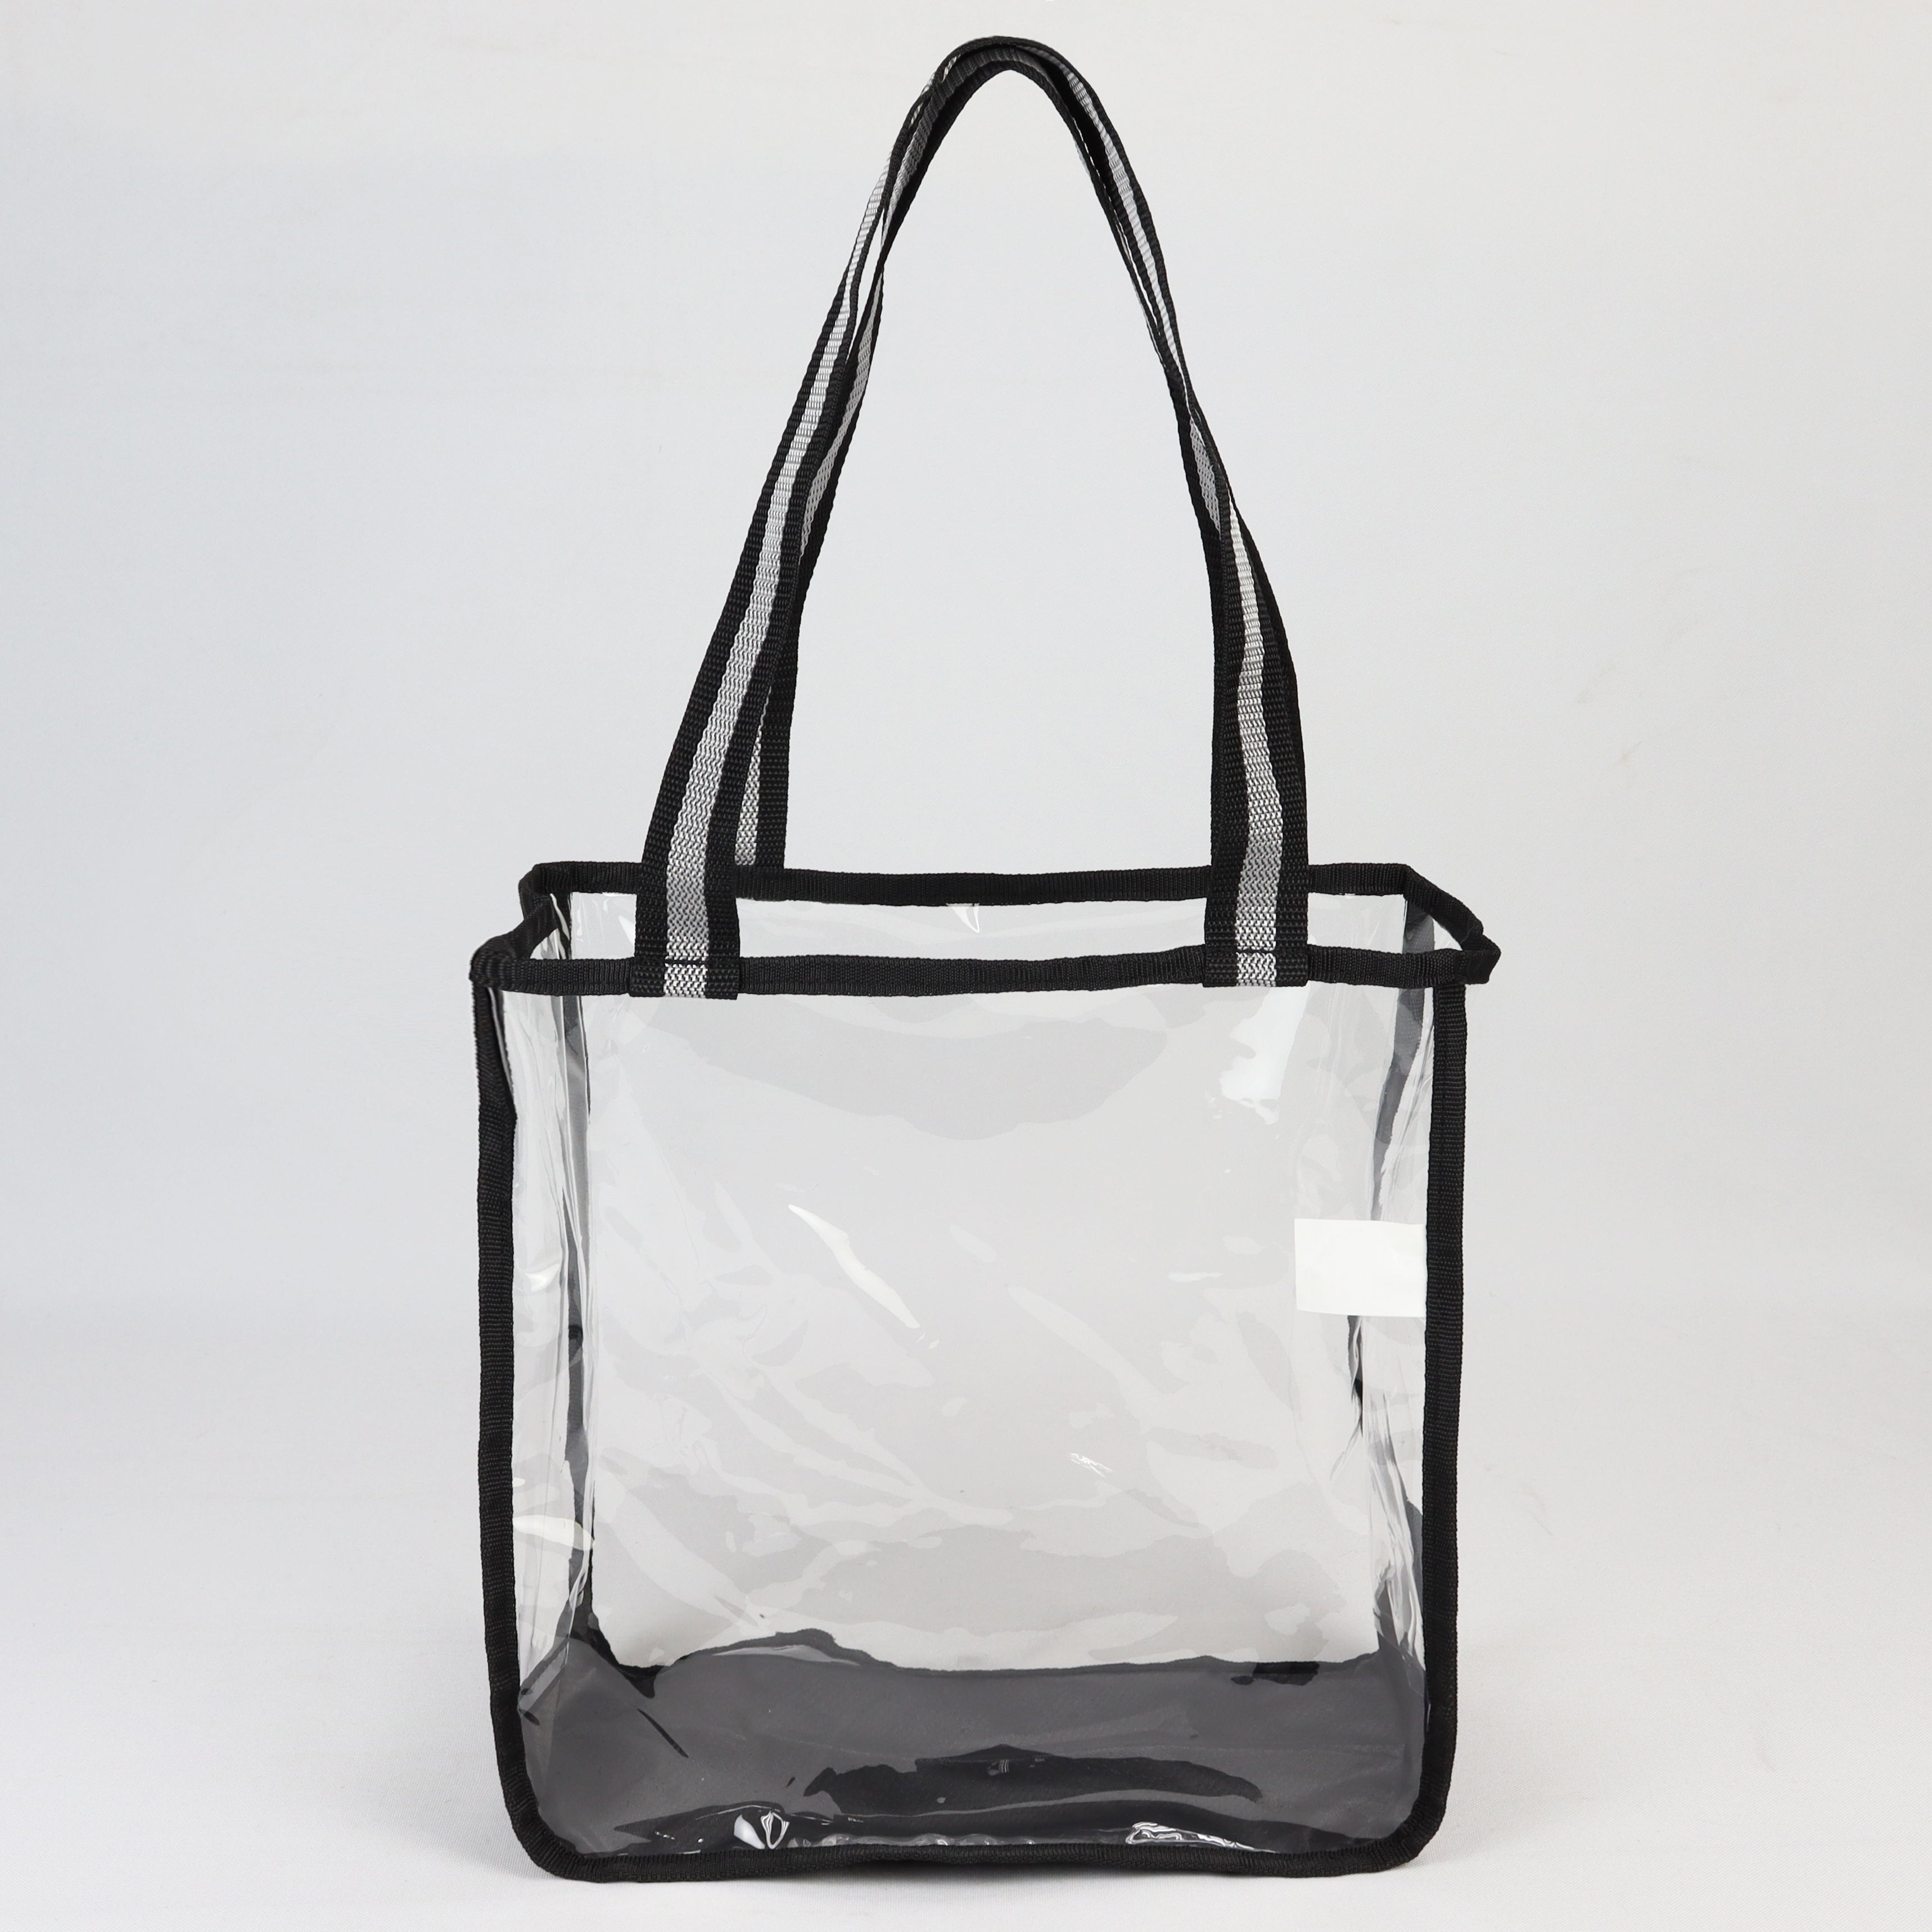 LS-TPU605 - Clear Tote Bag